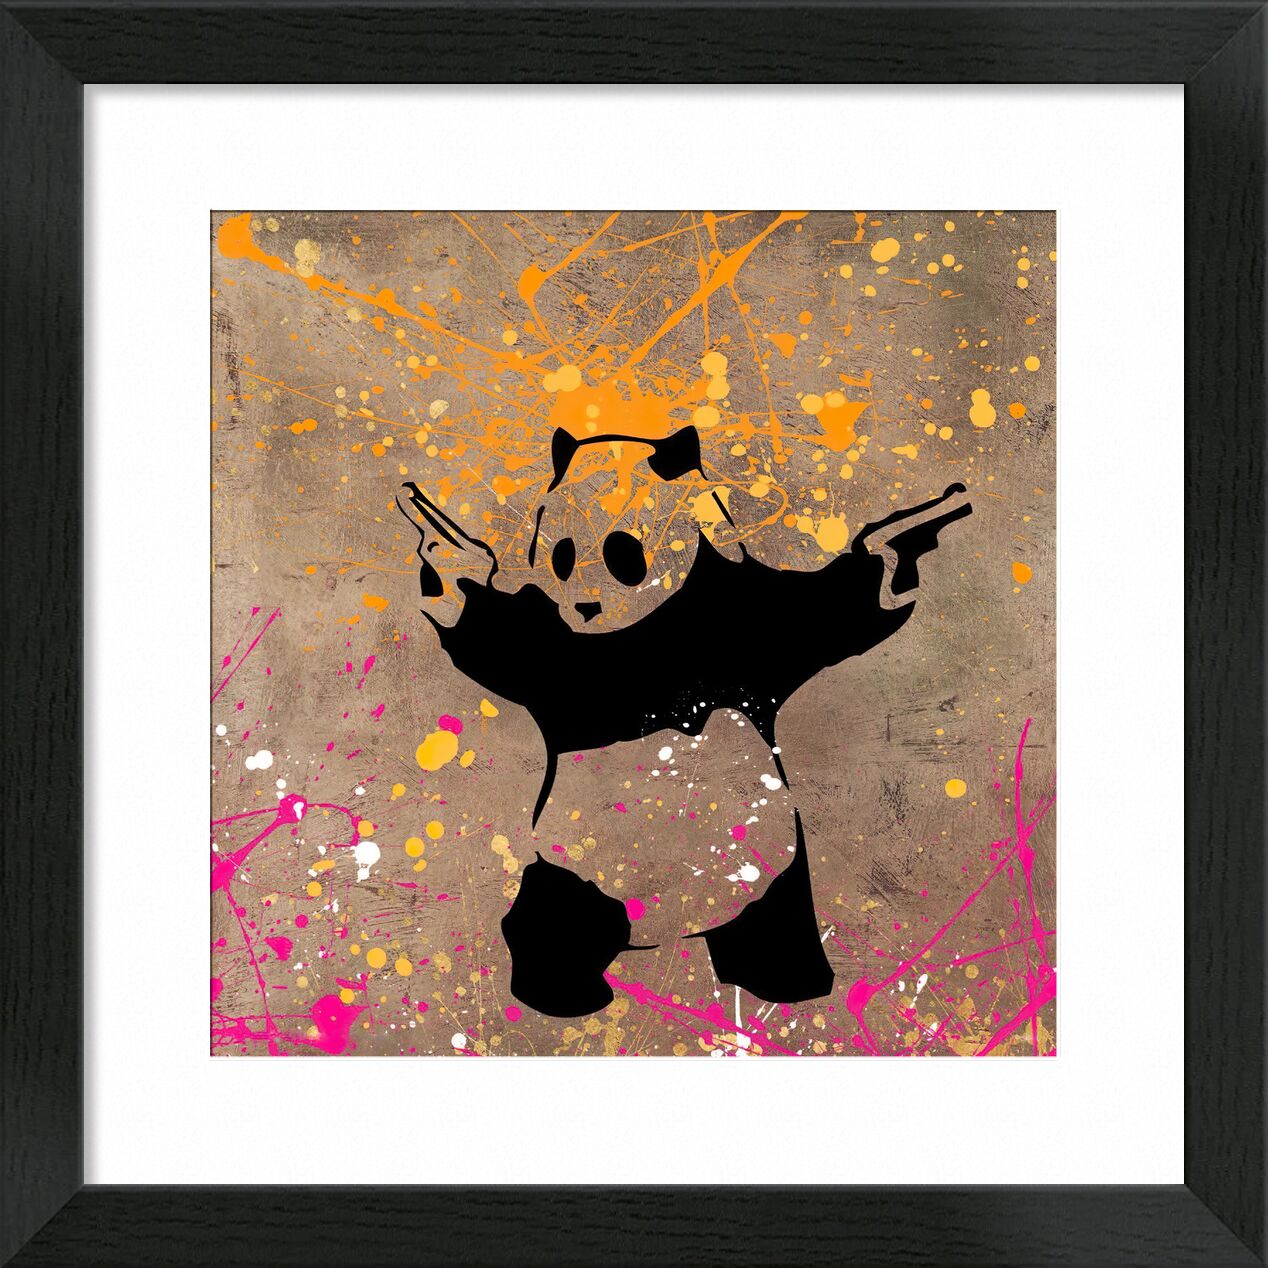 Panda with Guns - BANKSY desde Bellas artes, Prodi Art, panda, pistolas, arte callejero, Banksy, pintada